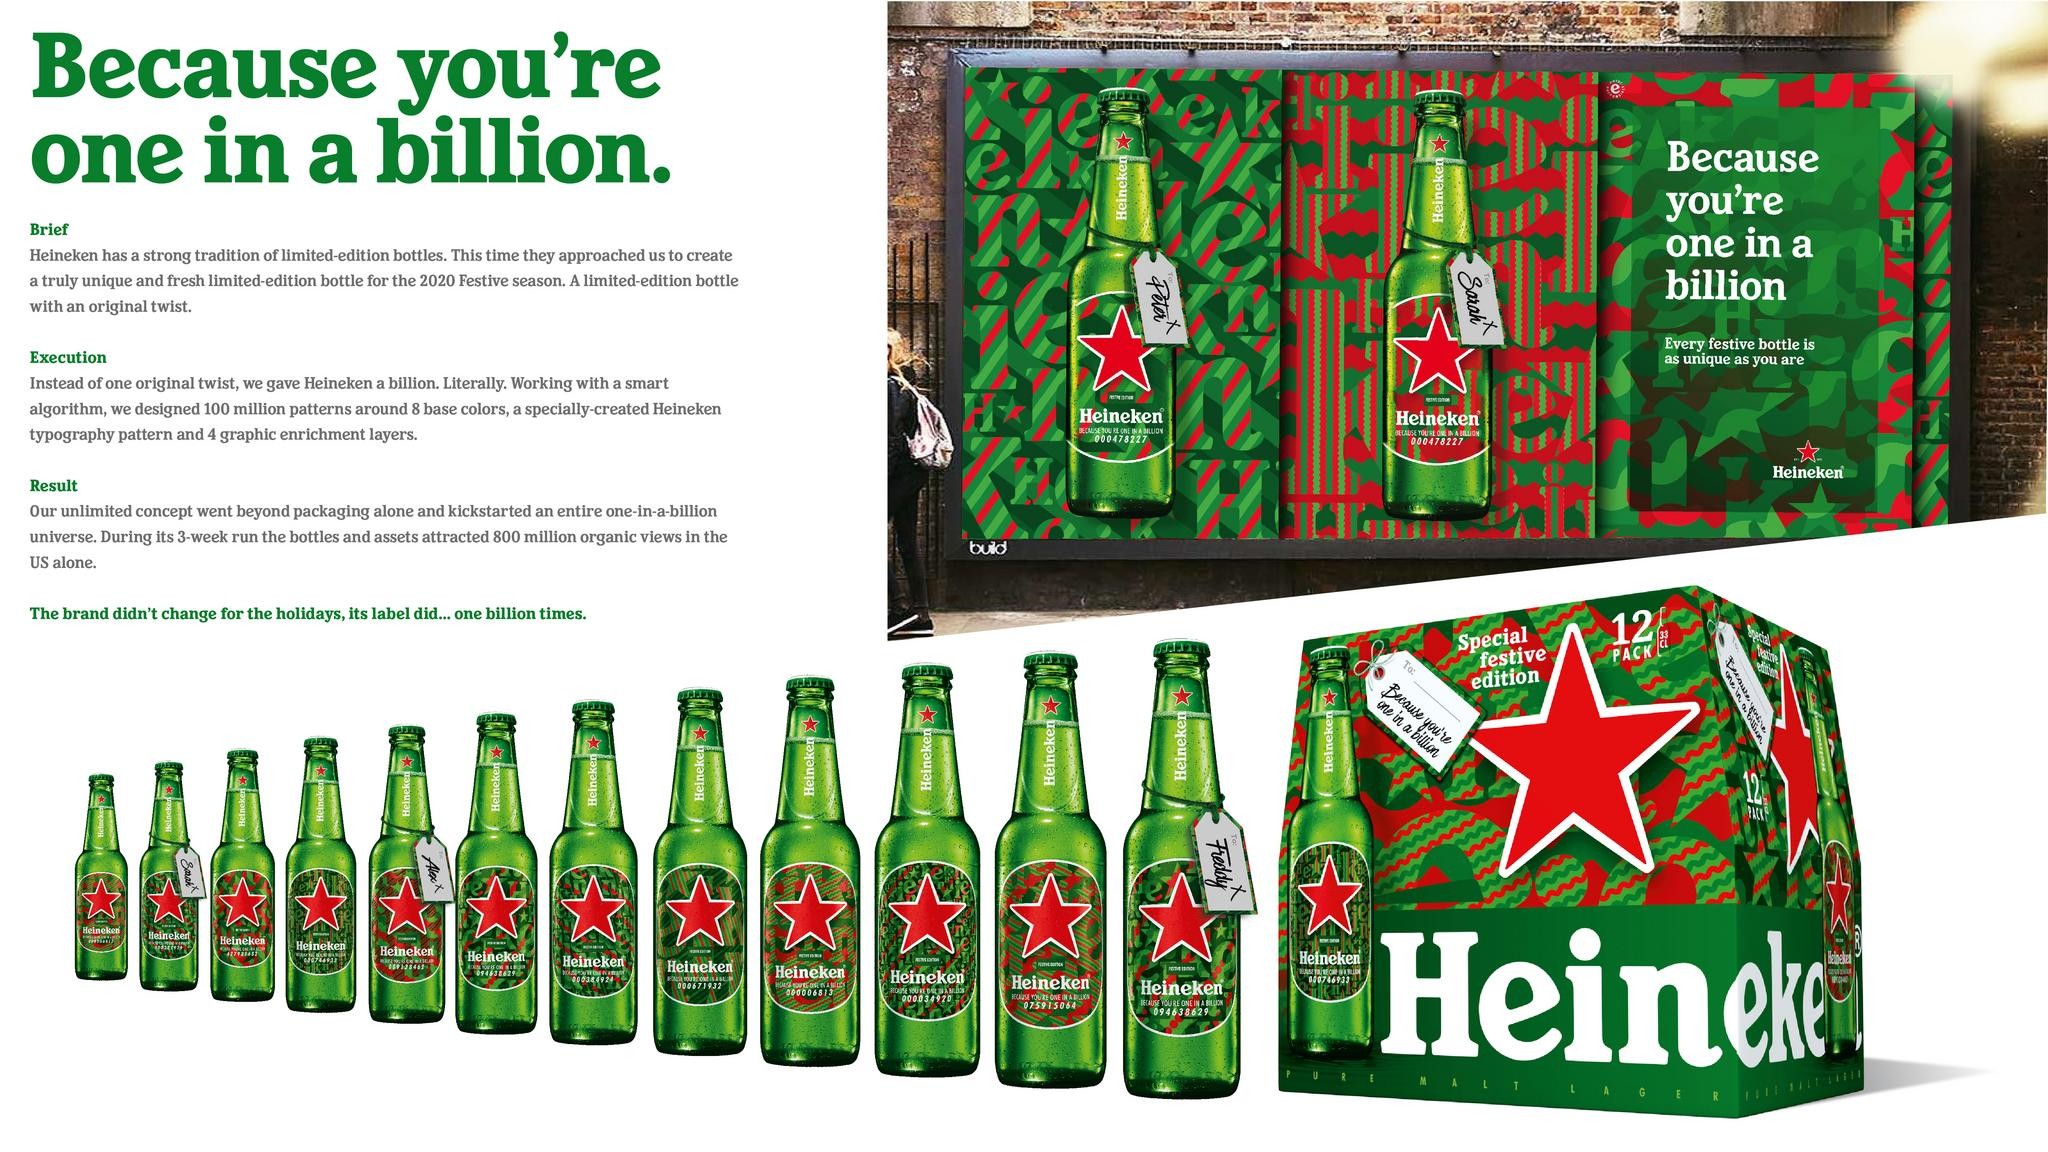 Heineken - One in a Billion